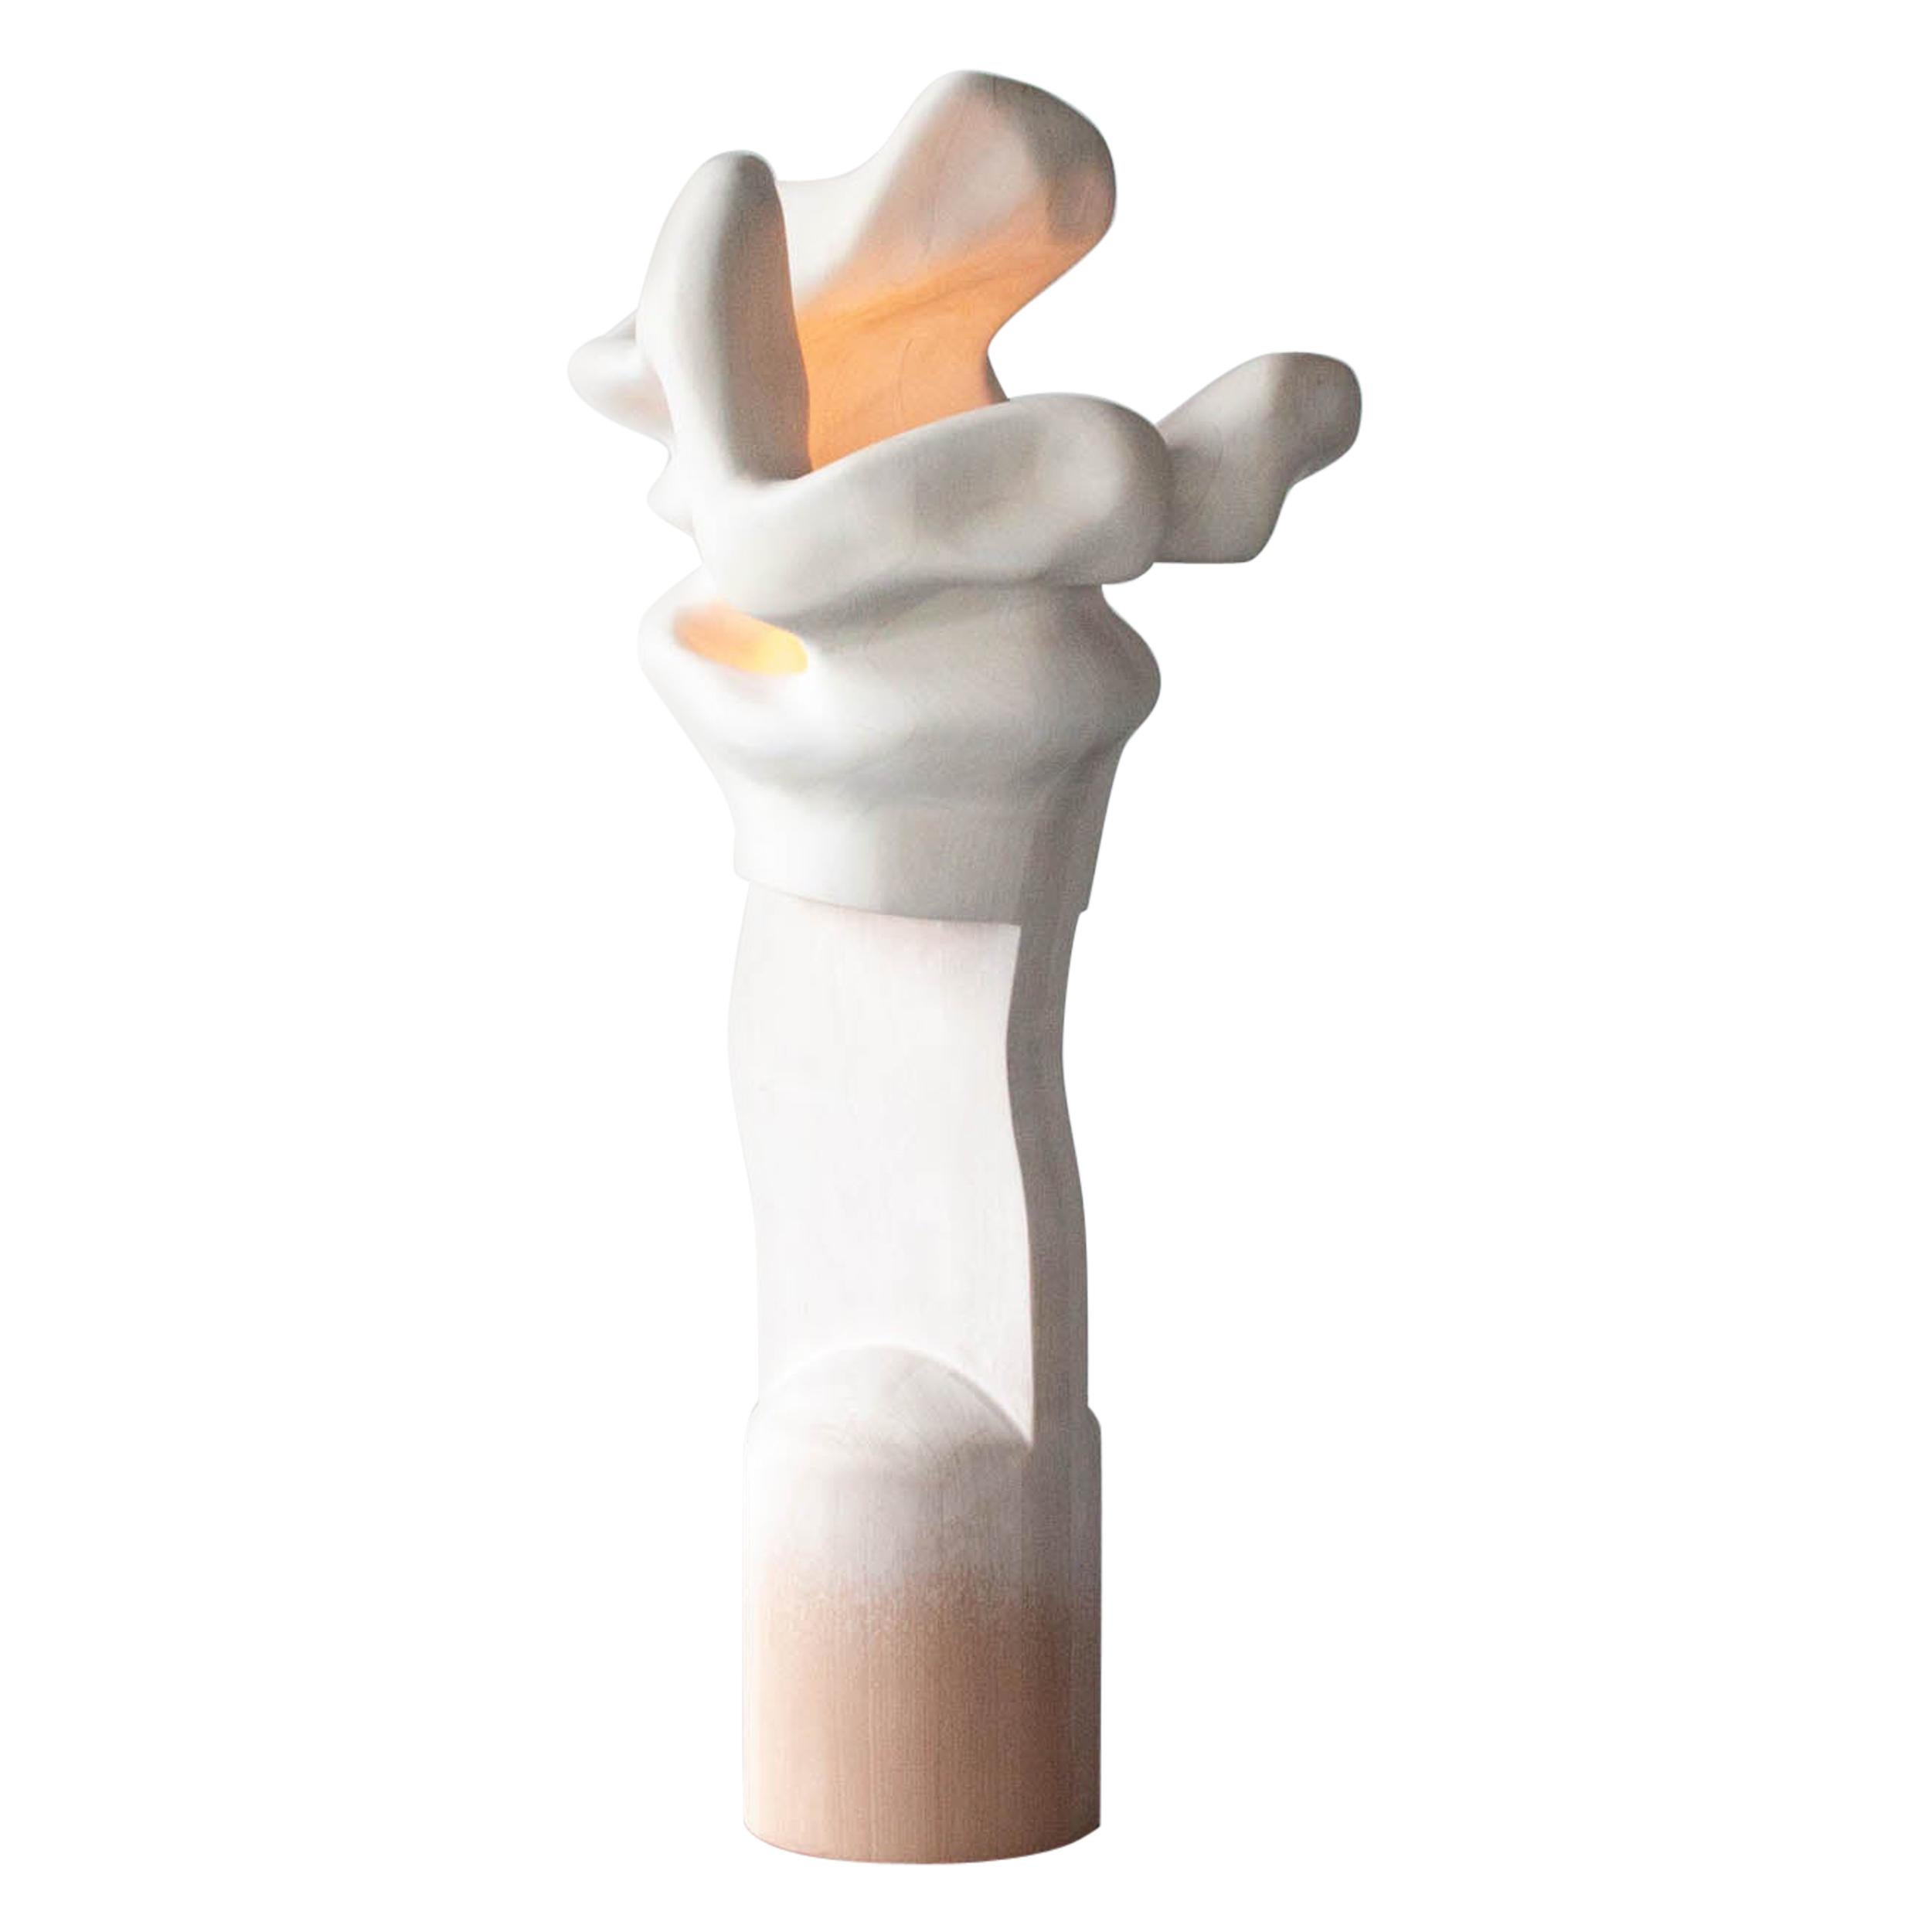 Vincent Pocsik, "A Wrinkle (I Jiggle)", Light Sculpture, 2021 For Sale